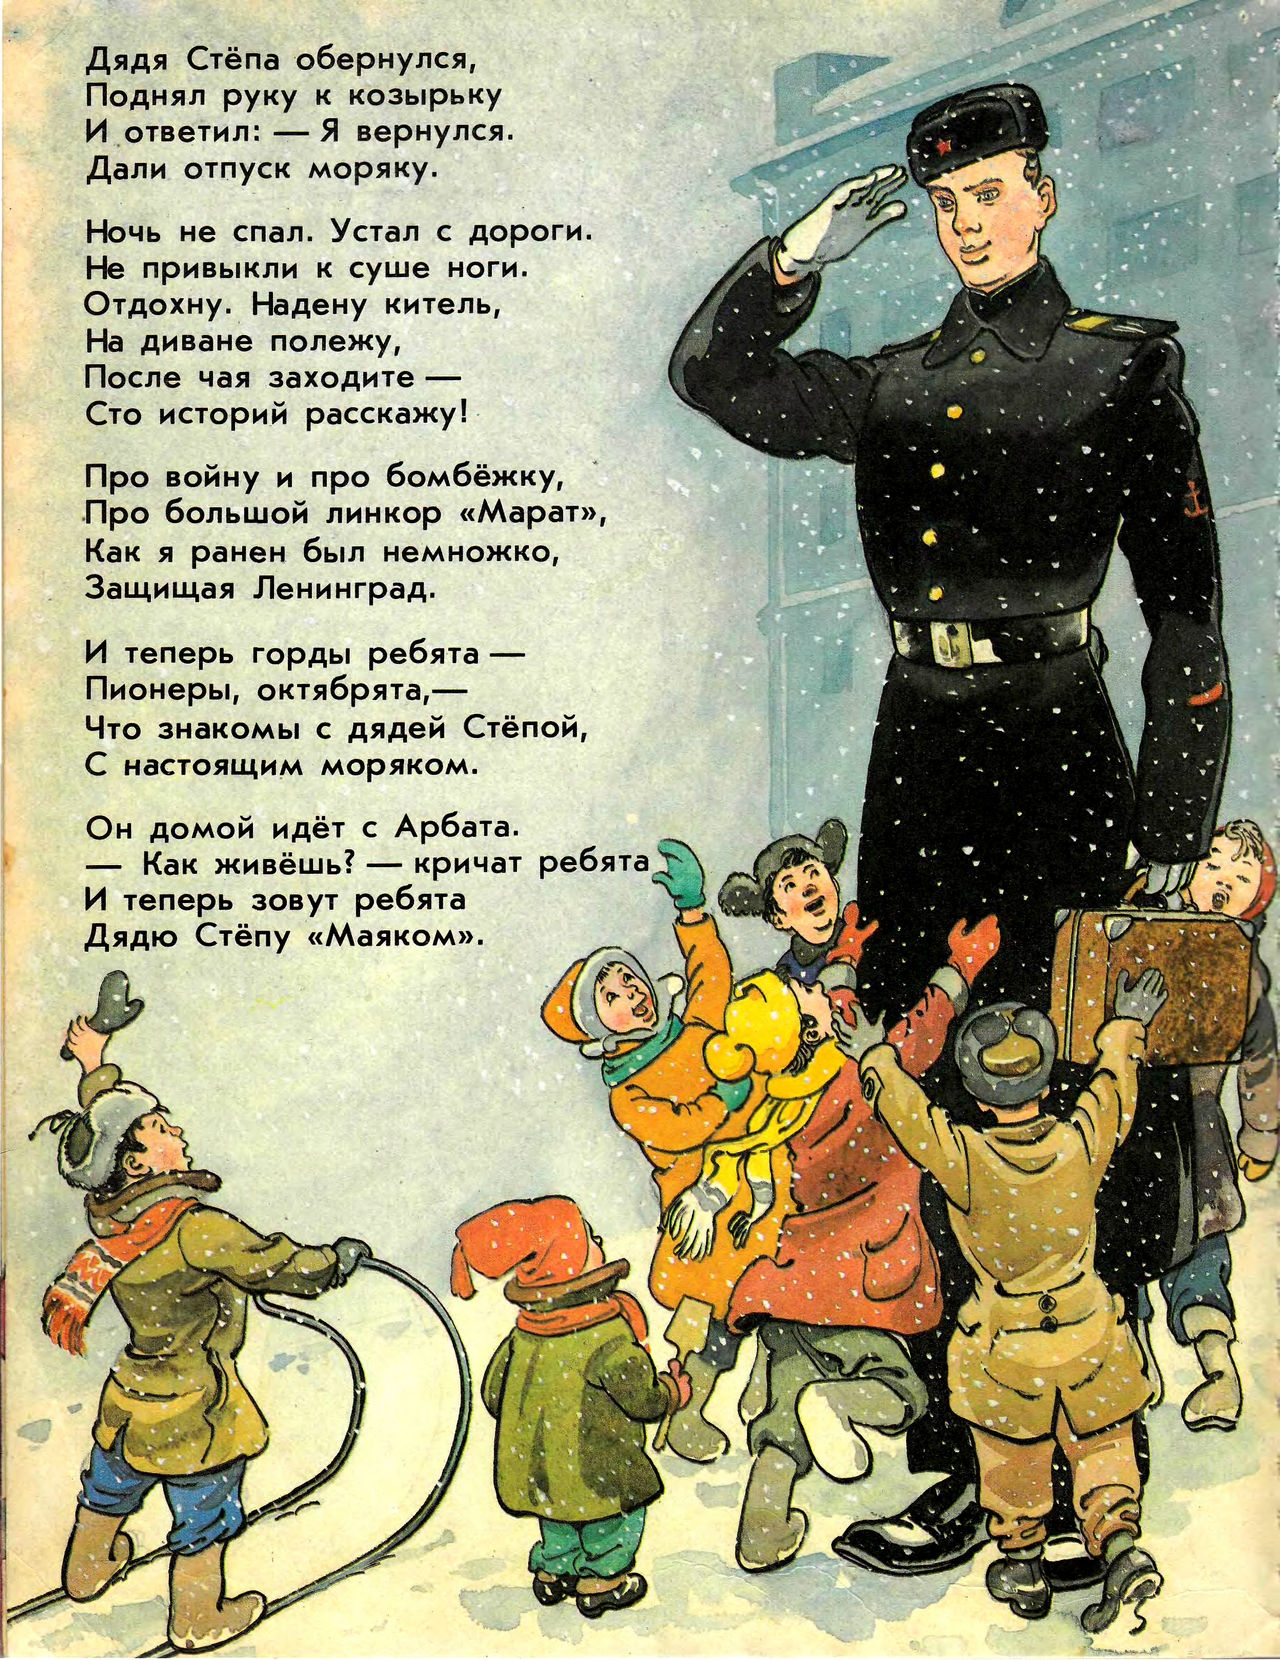 Милиционер говорит ему. ДЯДЯСТЕПА иллюстрации Роьова. Иллюстрации к.Ротова к "дяде степе Михалкова.